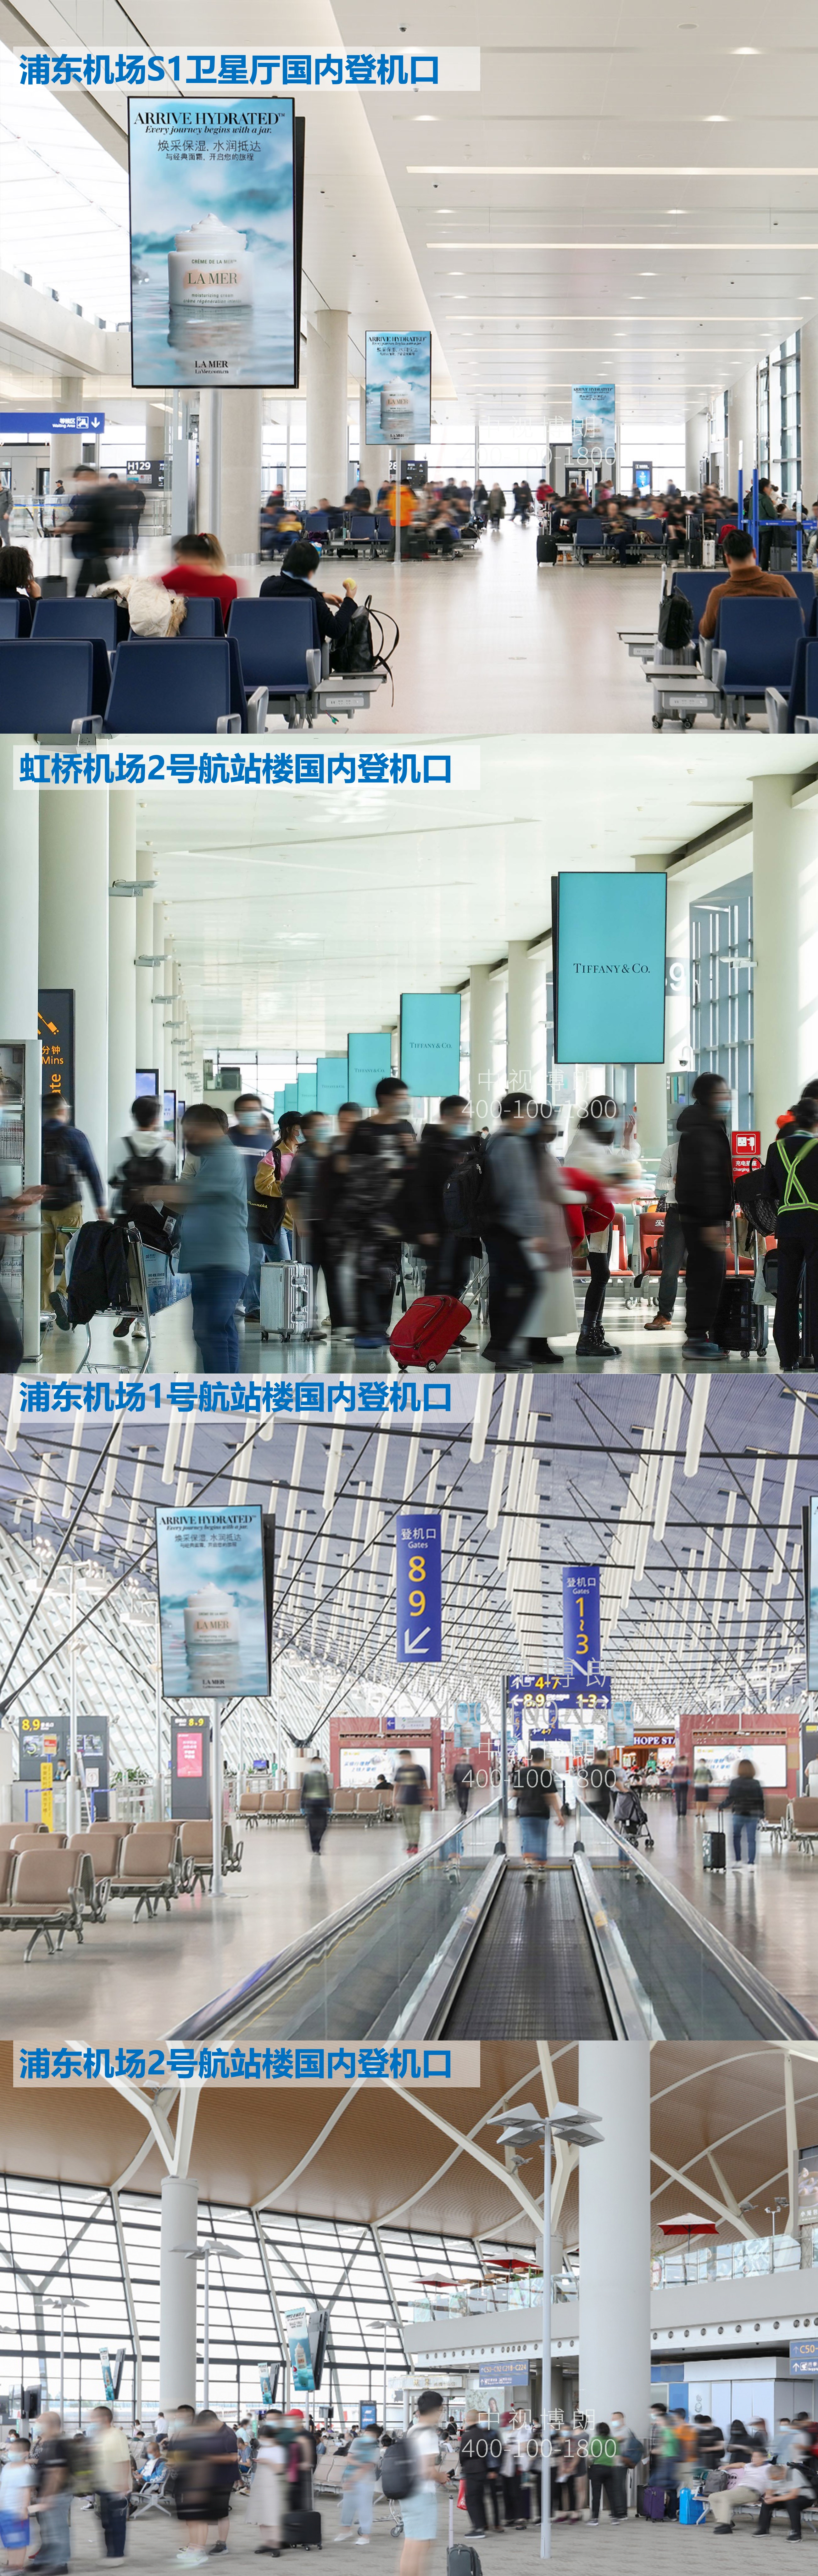 上海机场广告-虹桥/浦东国内出发全覆盖刷屏